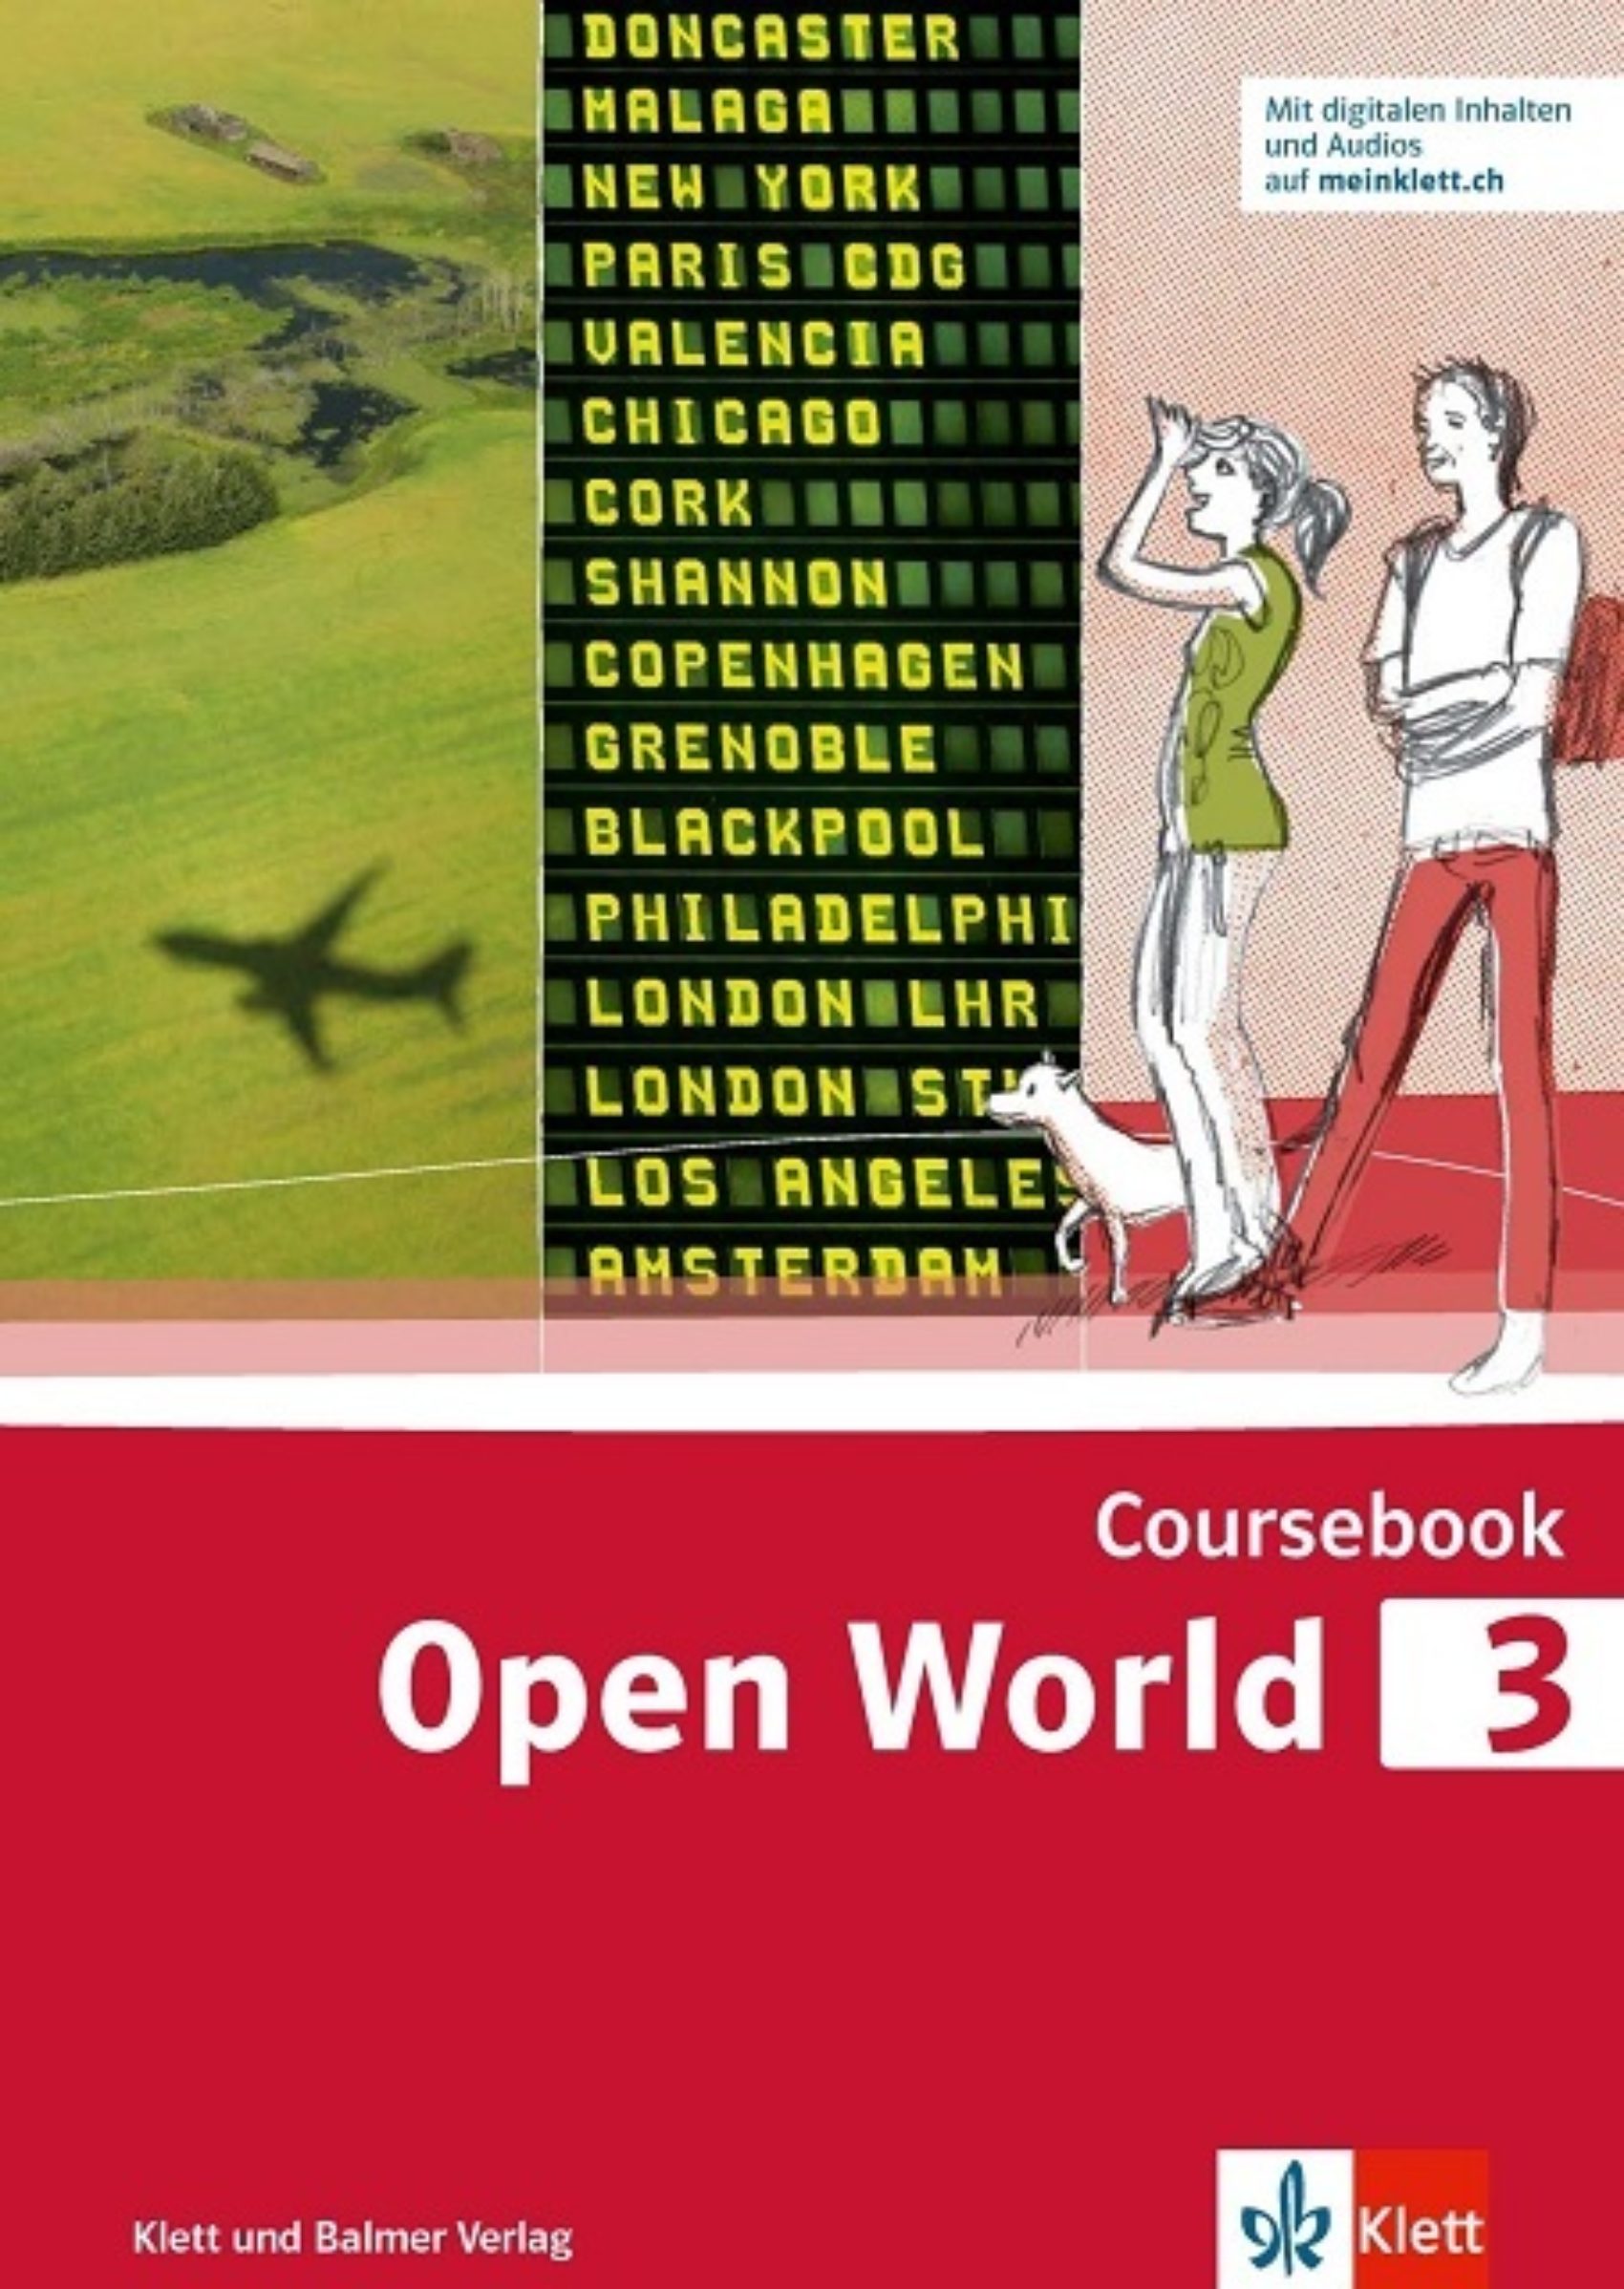 Coursebook open world 3 978 3 264 84262 3 klett und balmer